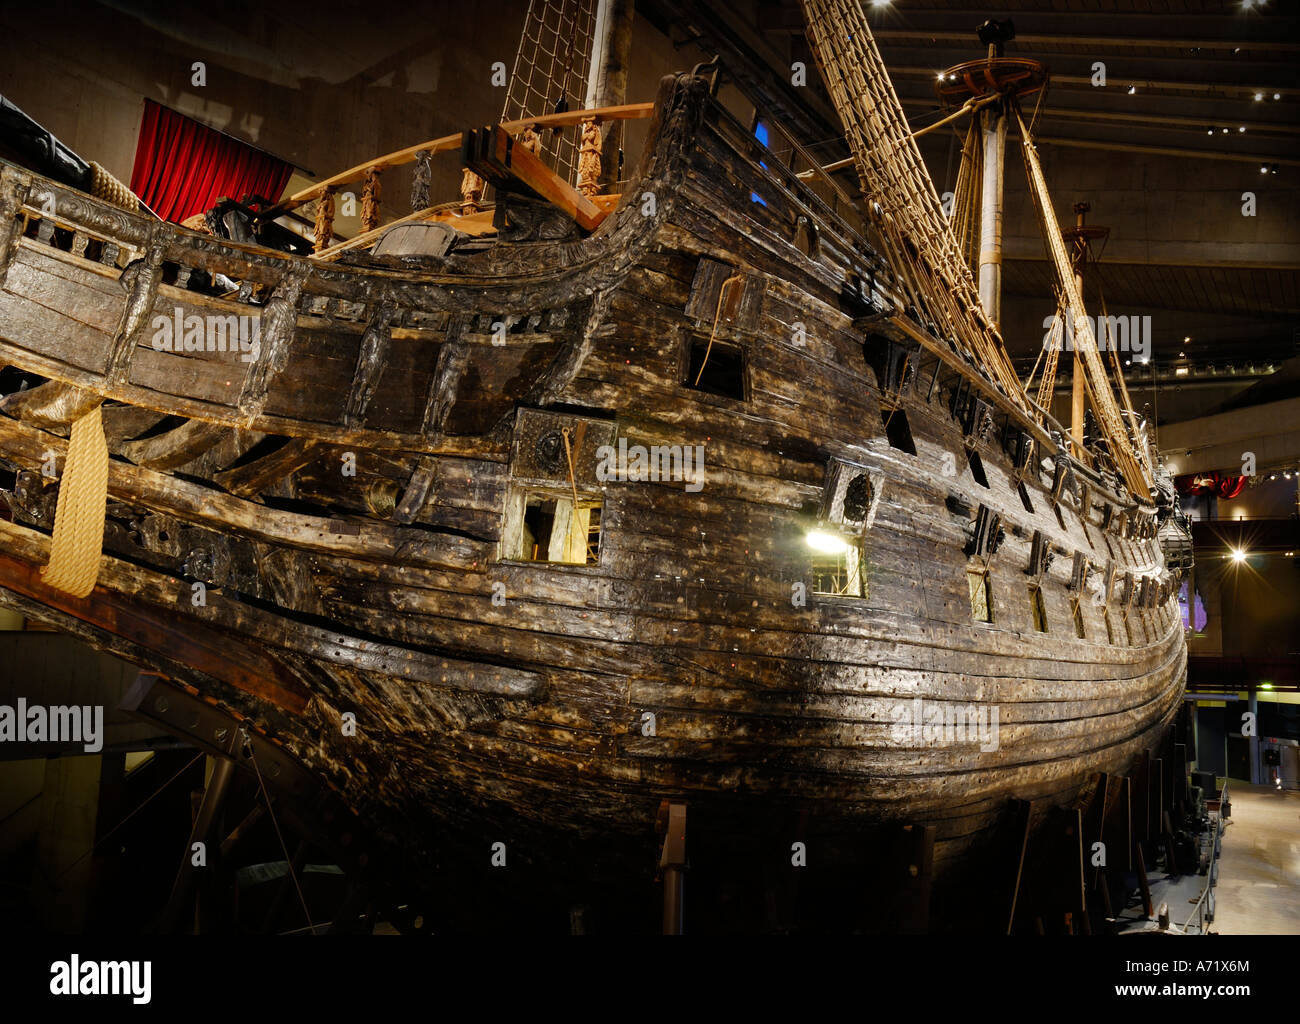 The well preserved 17th century battleship Vasa at the Vasa museum ...